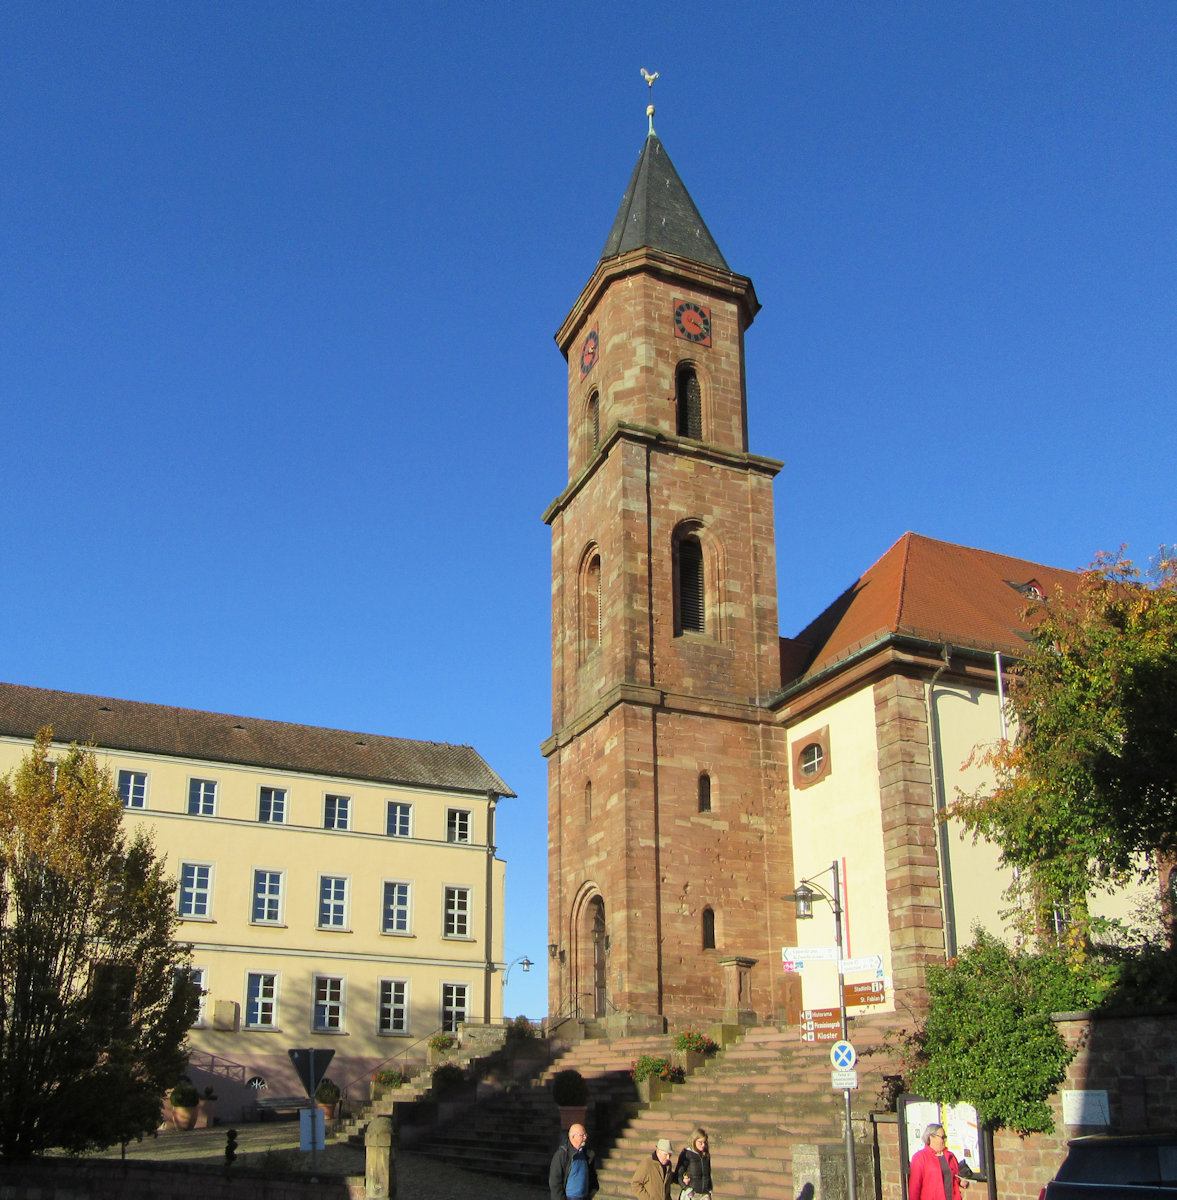 ehemaliges Kloster Hornbach, heute protestantische Kirche von 1786 und Hotel